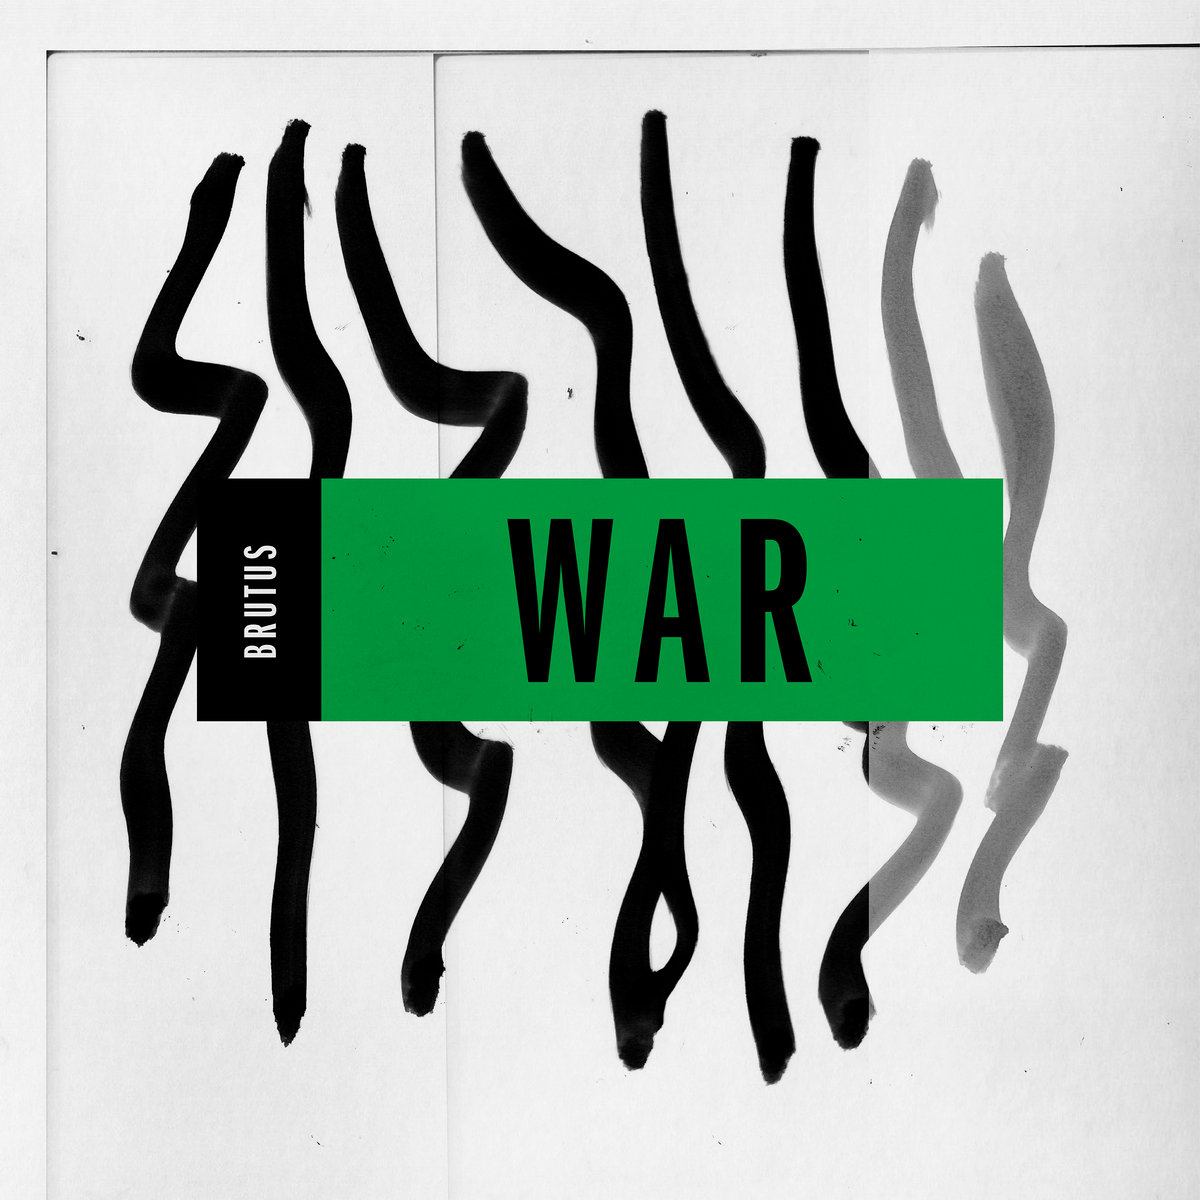 Brutus War cover artwork